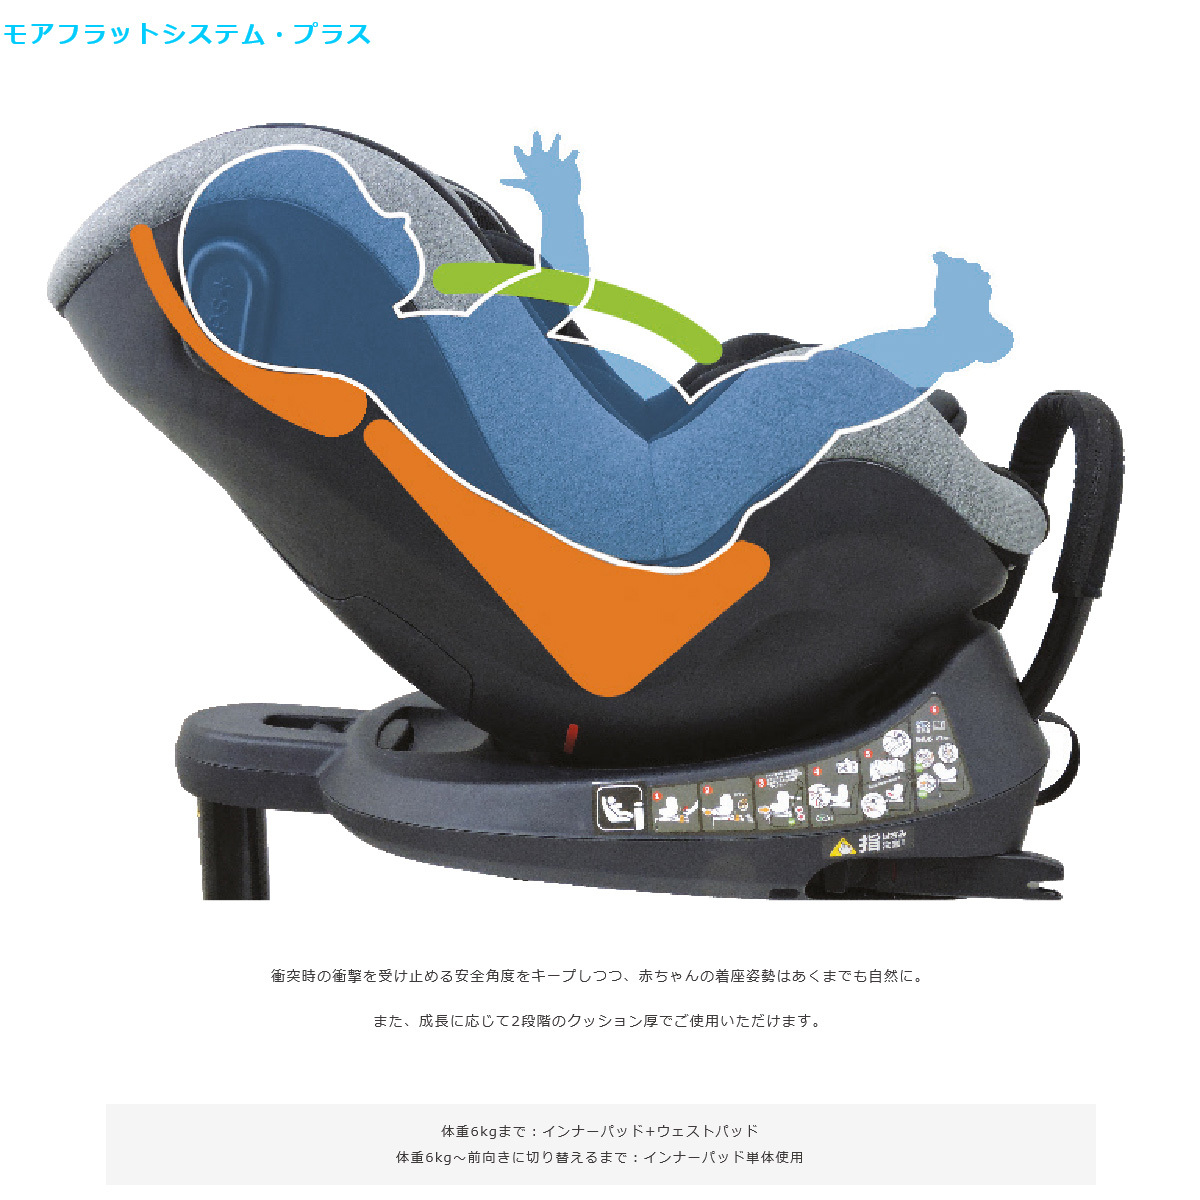 チャイルドシート 新生児 isofix CG018 プレディオターン i-size ブラック リーマン 赤ちゃん 車 カー用品 カーシート 回転  出産準備 お出かけ 一部地域送料無料